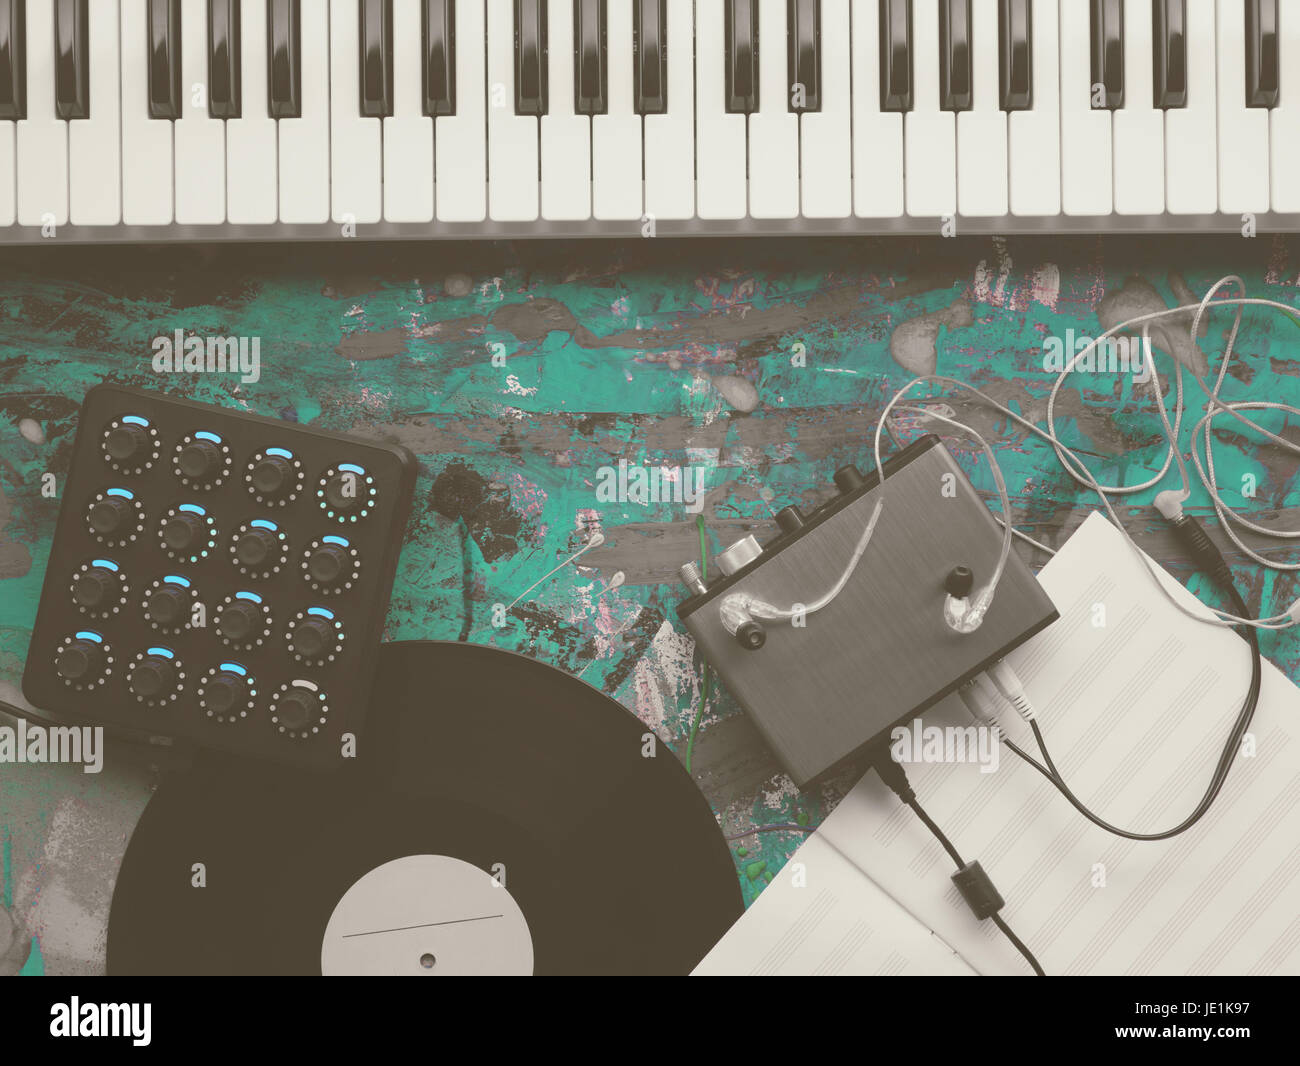 Clavier Midi Dj synthé piano keys avec aucun peuple vue d'en haut. Matériel  de musique numérique et analogique. Sound design moderne. Les voies mixage  et mastering Photo Stock - Alamy